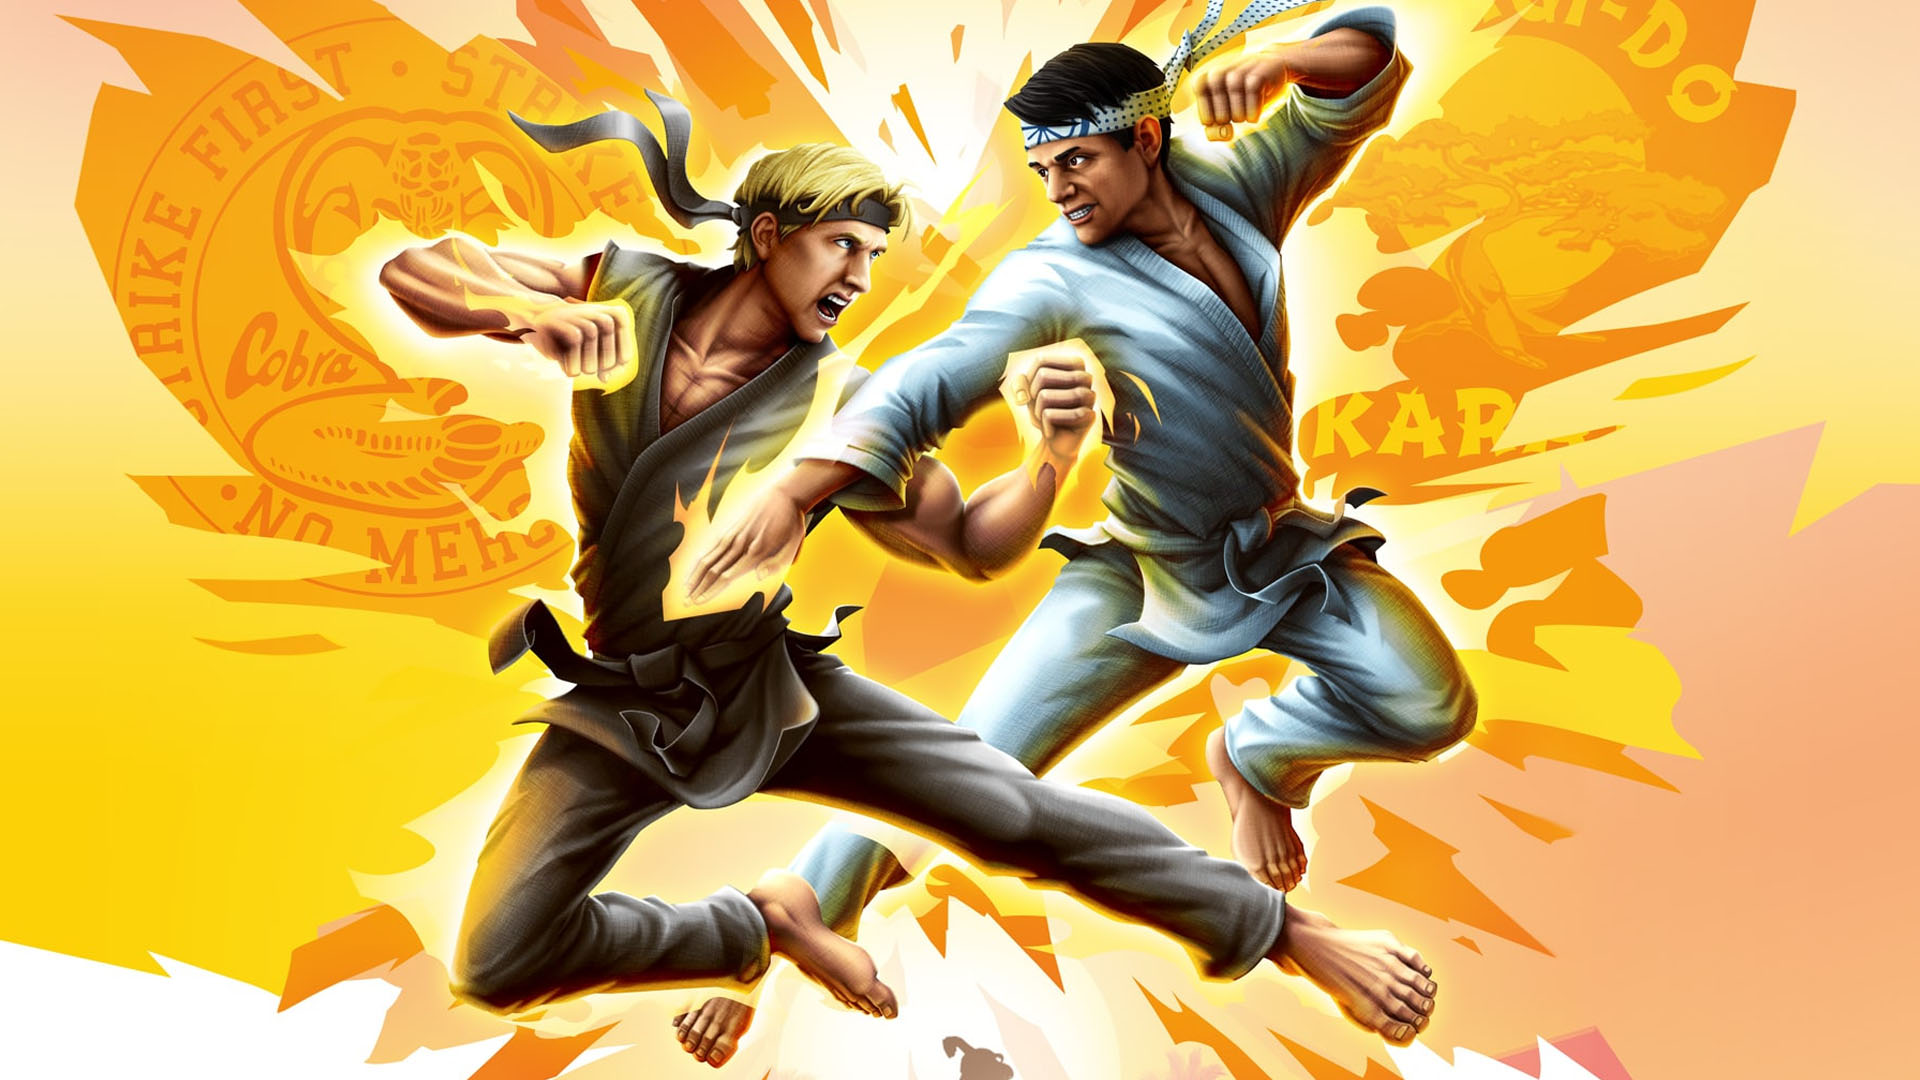 Cobra Kai: The Karate Kid Saga Continues STEAM